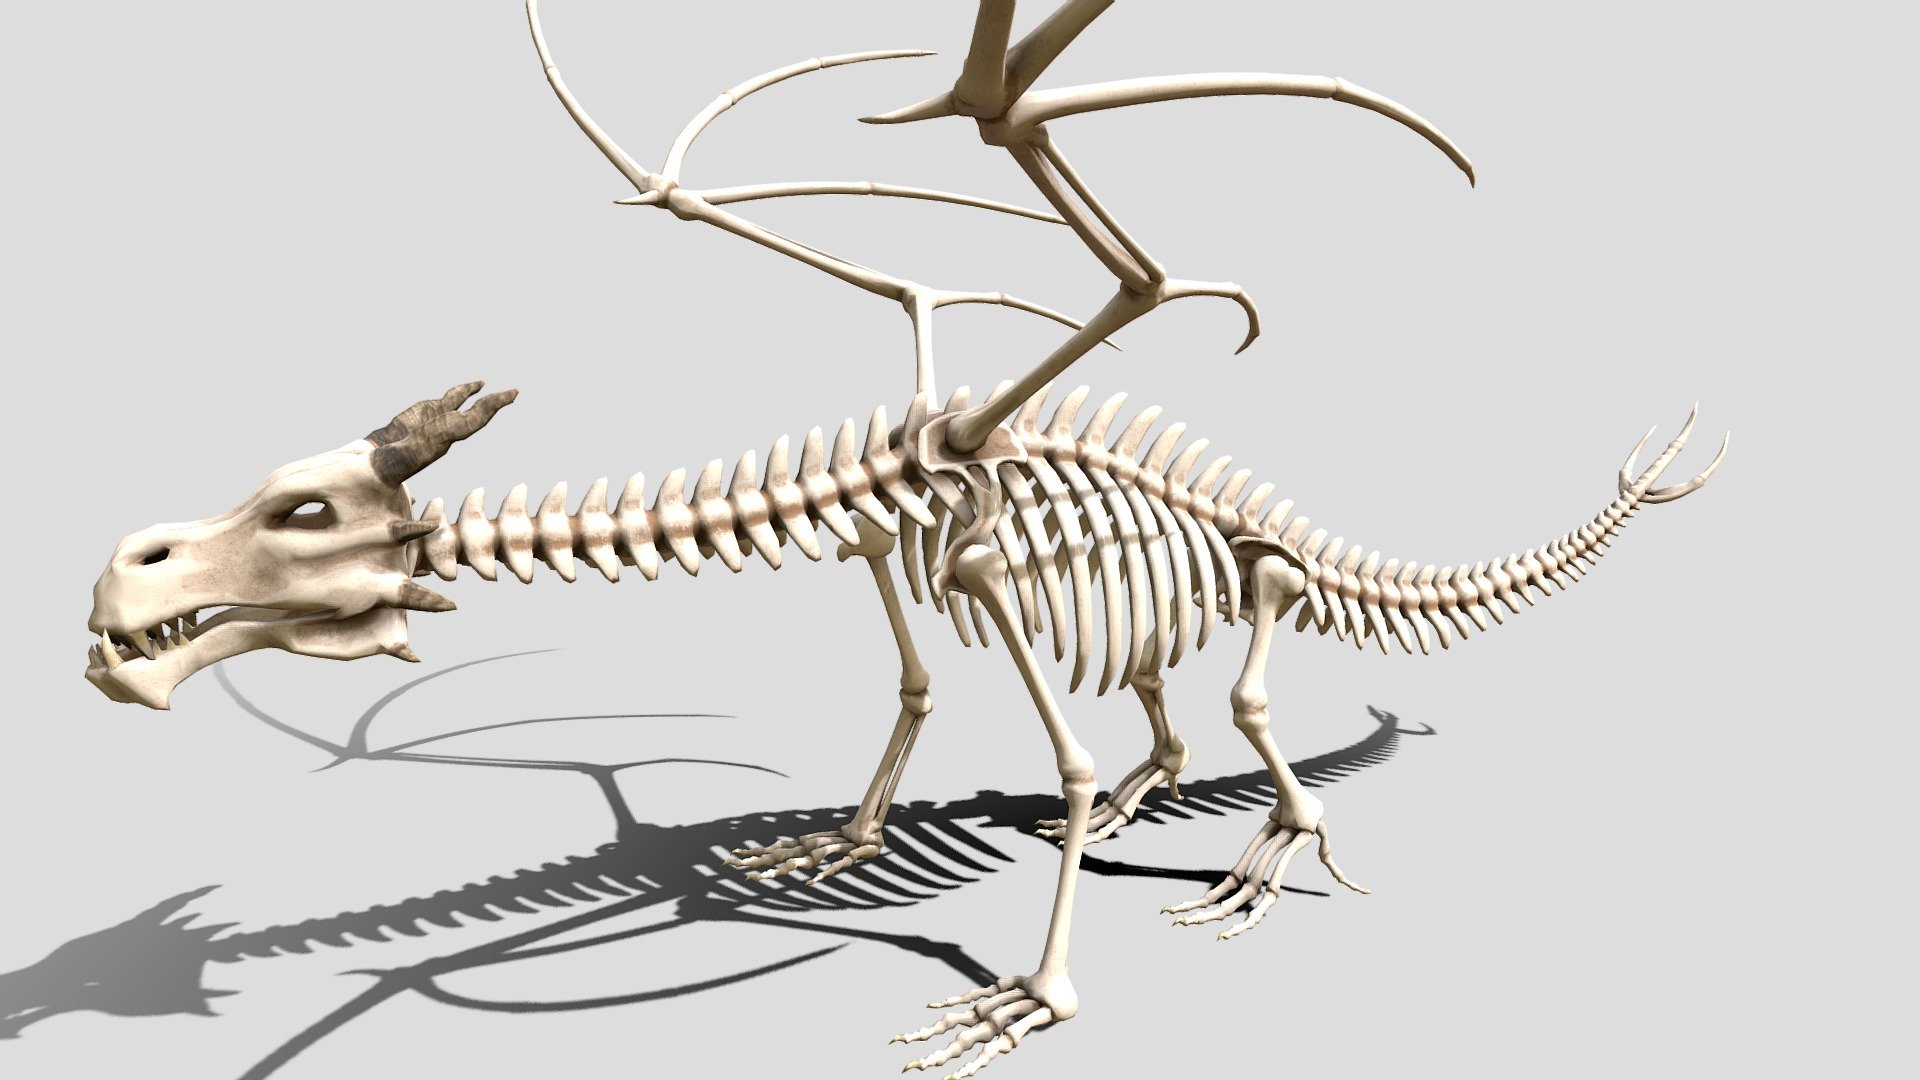 Dragon skeleton for 3d printing - Dragon skeleton - 3D model by Buncic 3d model